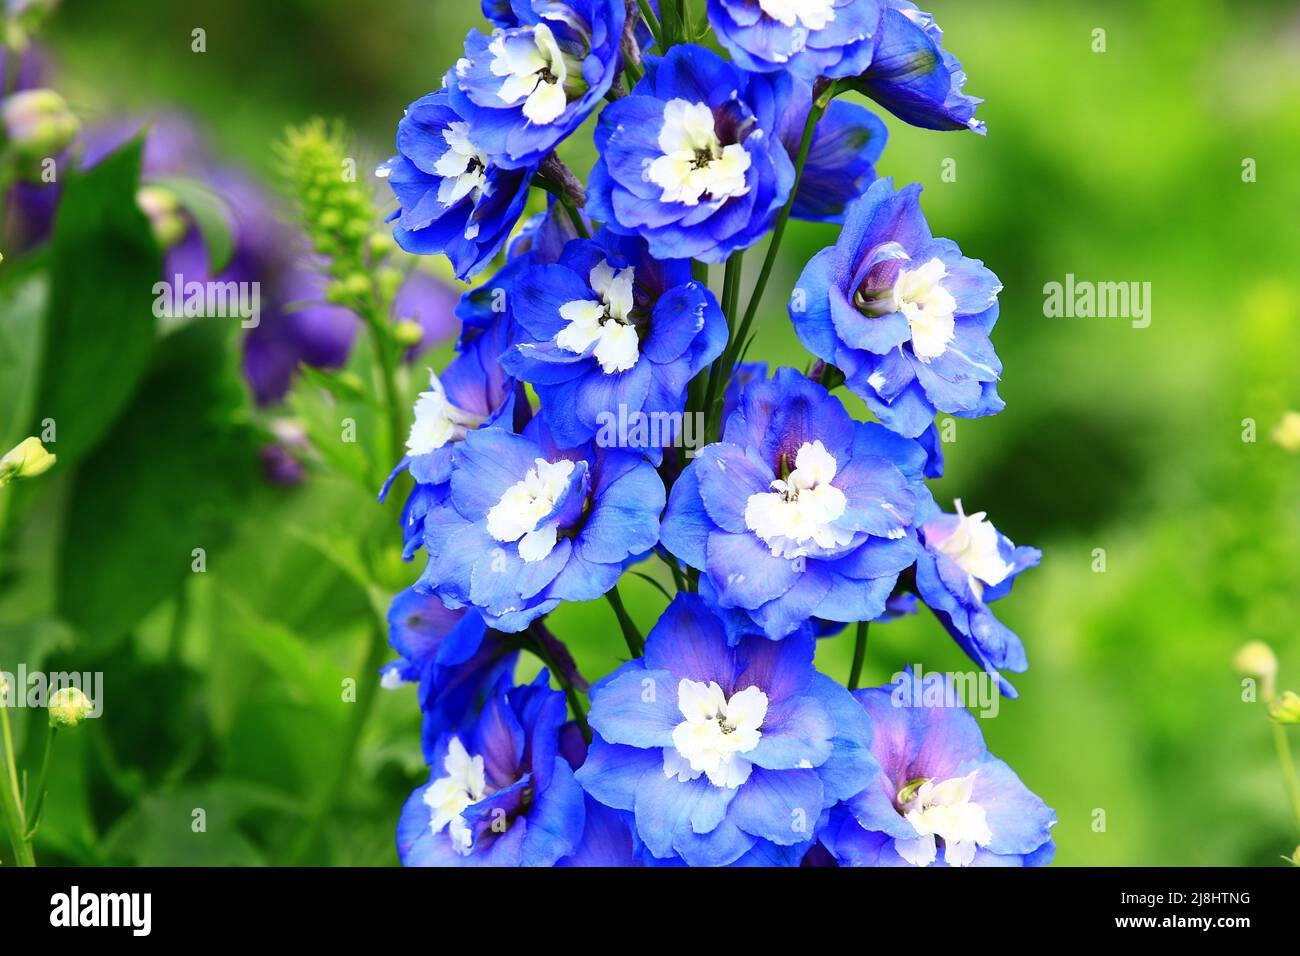 Fioritura Delphinium(Candle Delphinium,Larkspur inglese,Tall Larkspur) fiori, primo piano di blu con fiori Delphinium bianco che sbocciano nel giardino Foto Stock